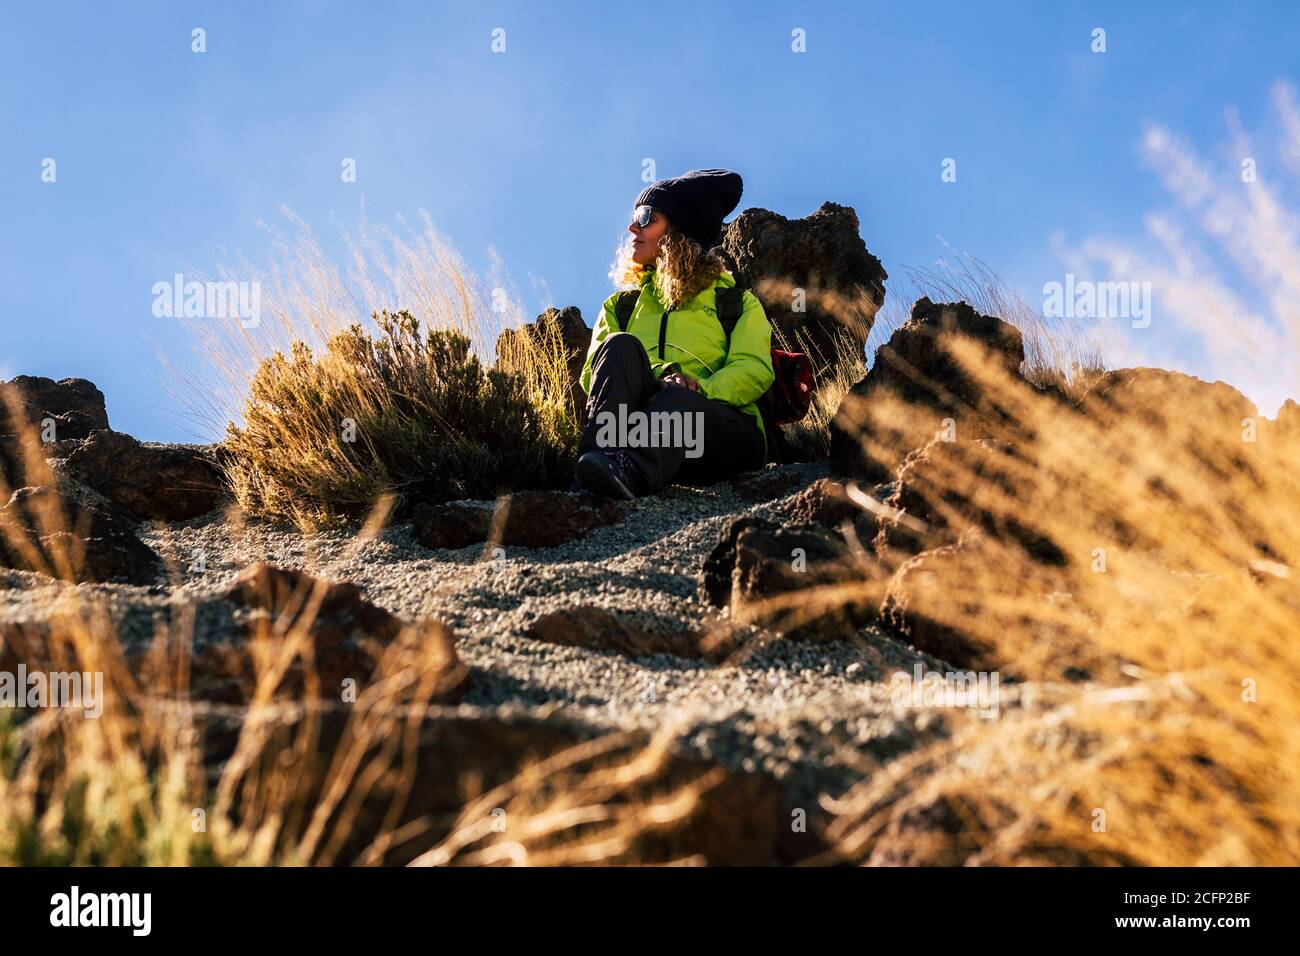 Frau entspannt sitzen auf dem Boden nach einem Trekking Ausflug - Konzept der Reise und Outdoor-Freizeit Sport Wanderung Aktivität mit kaukasischen Menschen enj Stockfoto